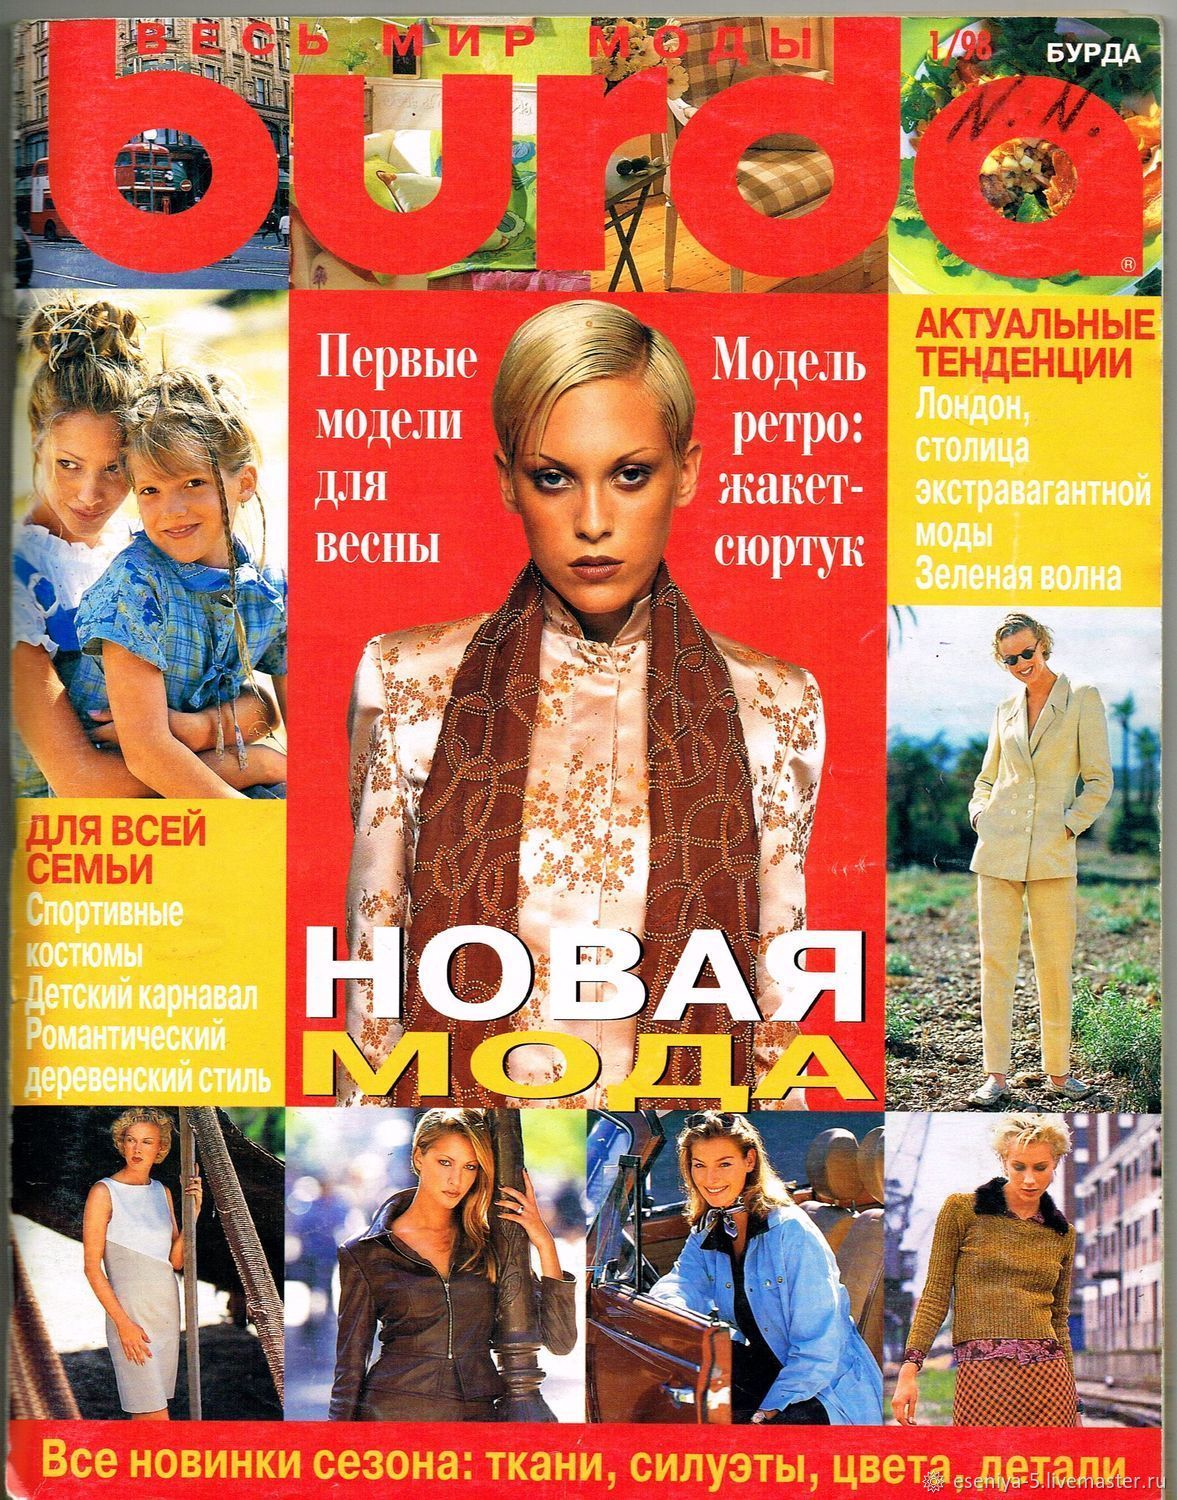 Burda Moden Magazine 1 1998 (January) new, Magazines, Moscow,  Фото №1